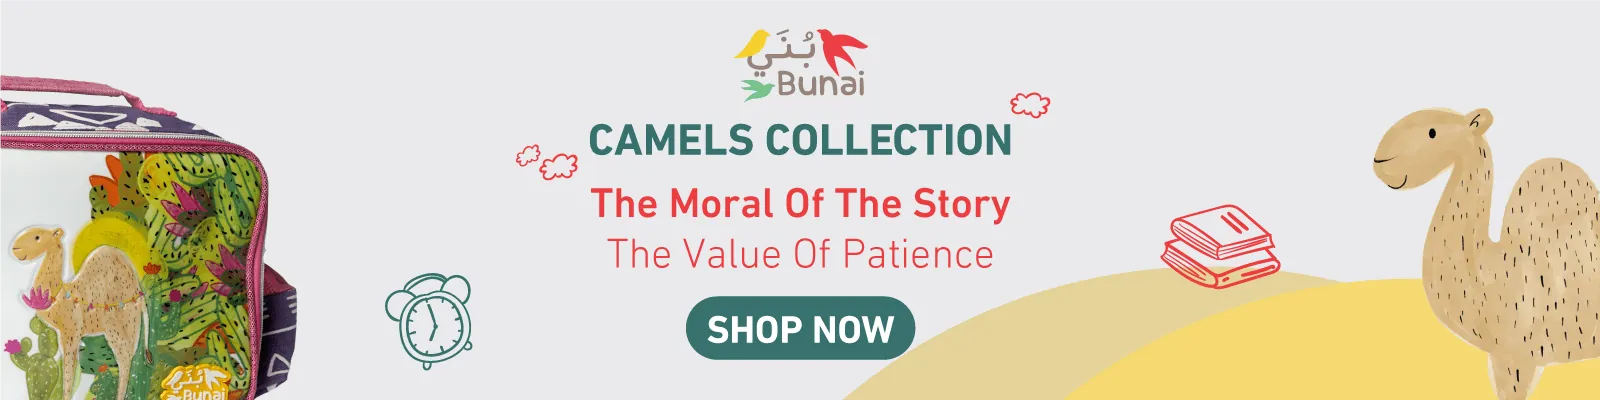 BTS BUNAI CAMEL WEBnew-media